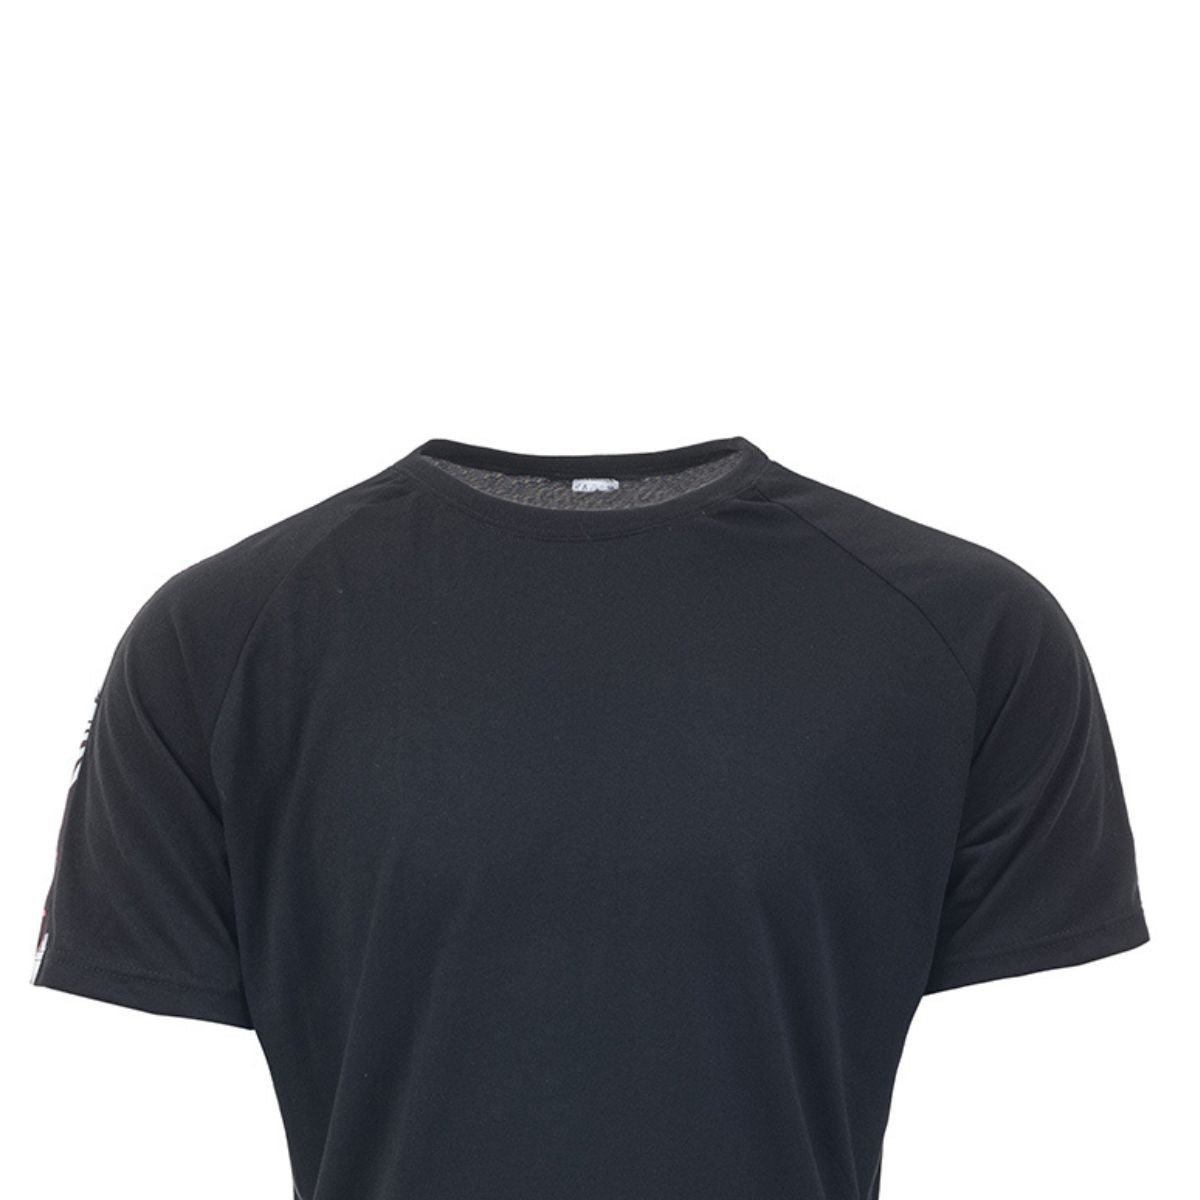 Ανδρικό T-Shirt (838)-BLACK - Panda Clothing